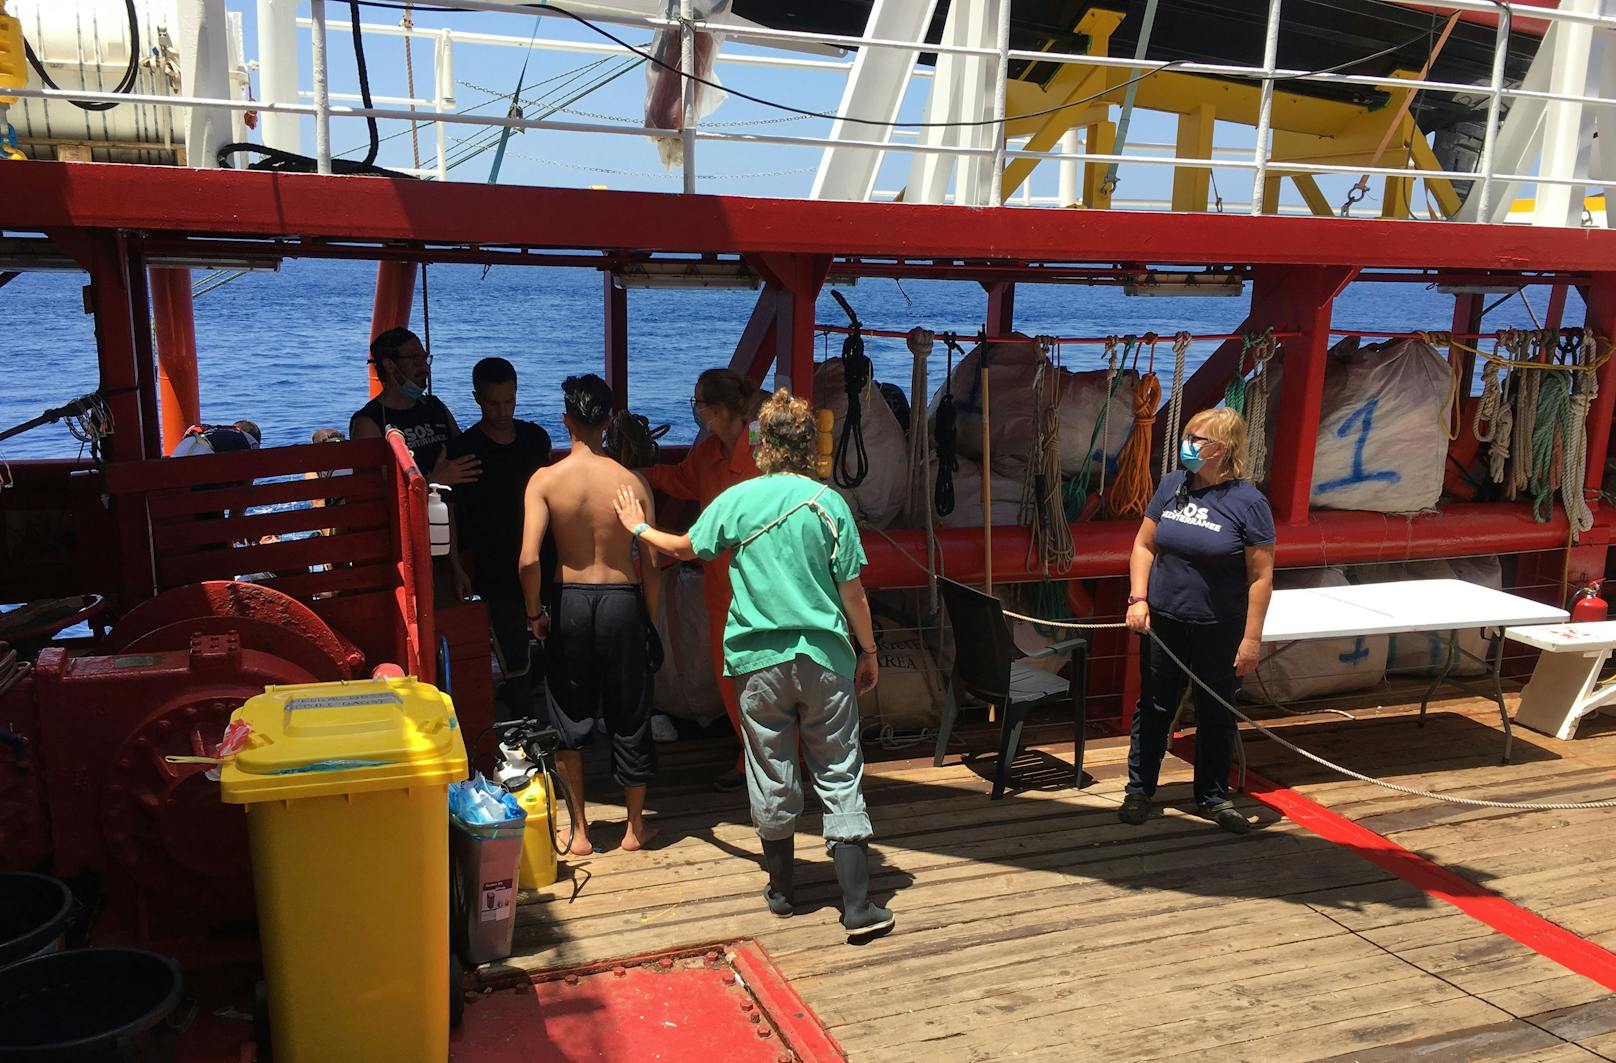 Am 2. Juli konnten zwei Menschen aus dem Wasser geborgen werden, nachdem sie über Bord gegangen waren.